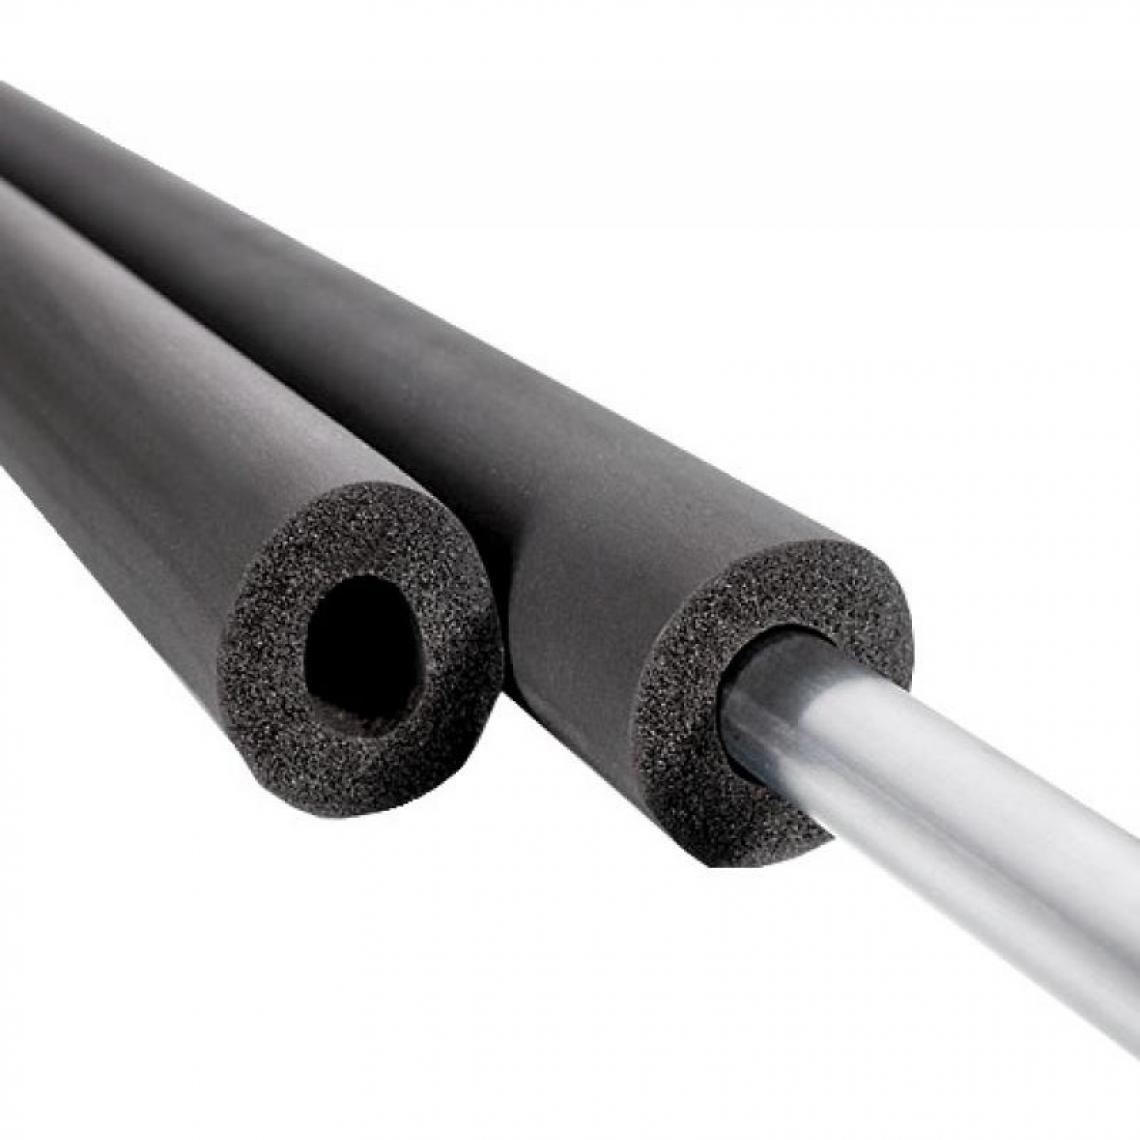 NMC - Tubes isolants non fendus Insul-tube, épaisseur 13 mm, longueur 2 m, pour tuyaux diamètre 18 mm, carton de 130 - Coudes et raccords PVC